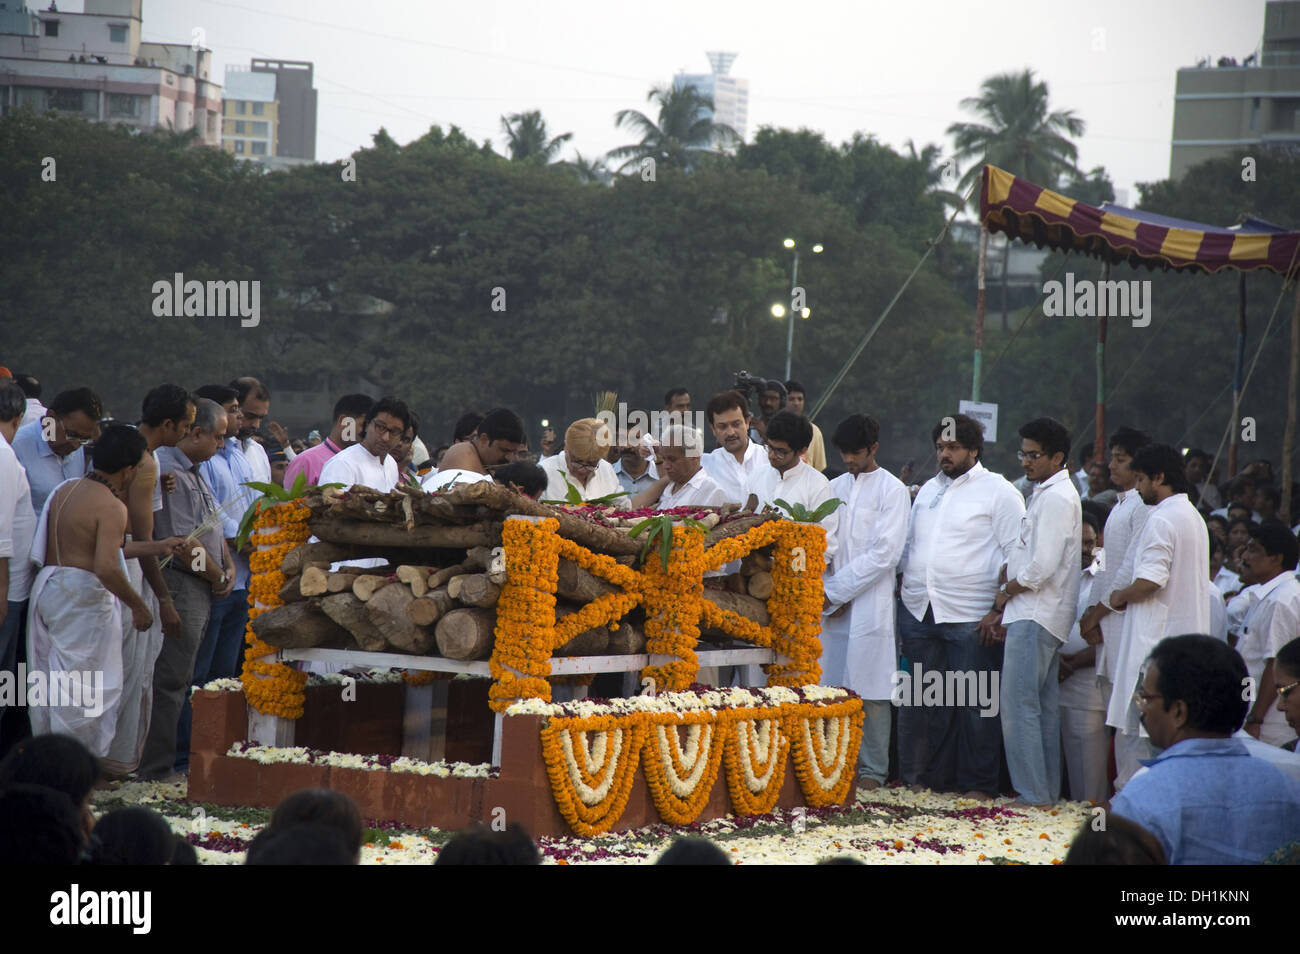 raj Thackeray and Family members Crowd gathered to attend funeral of Shiv Sena Chief Balasaheb Thackeray at shivaji park dadar west mumbai maharashtra india asia Stock Photo